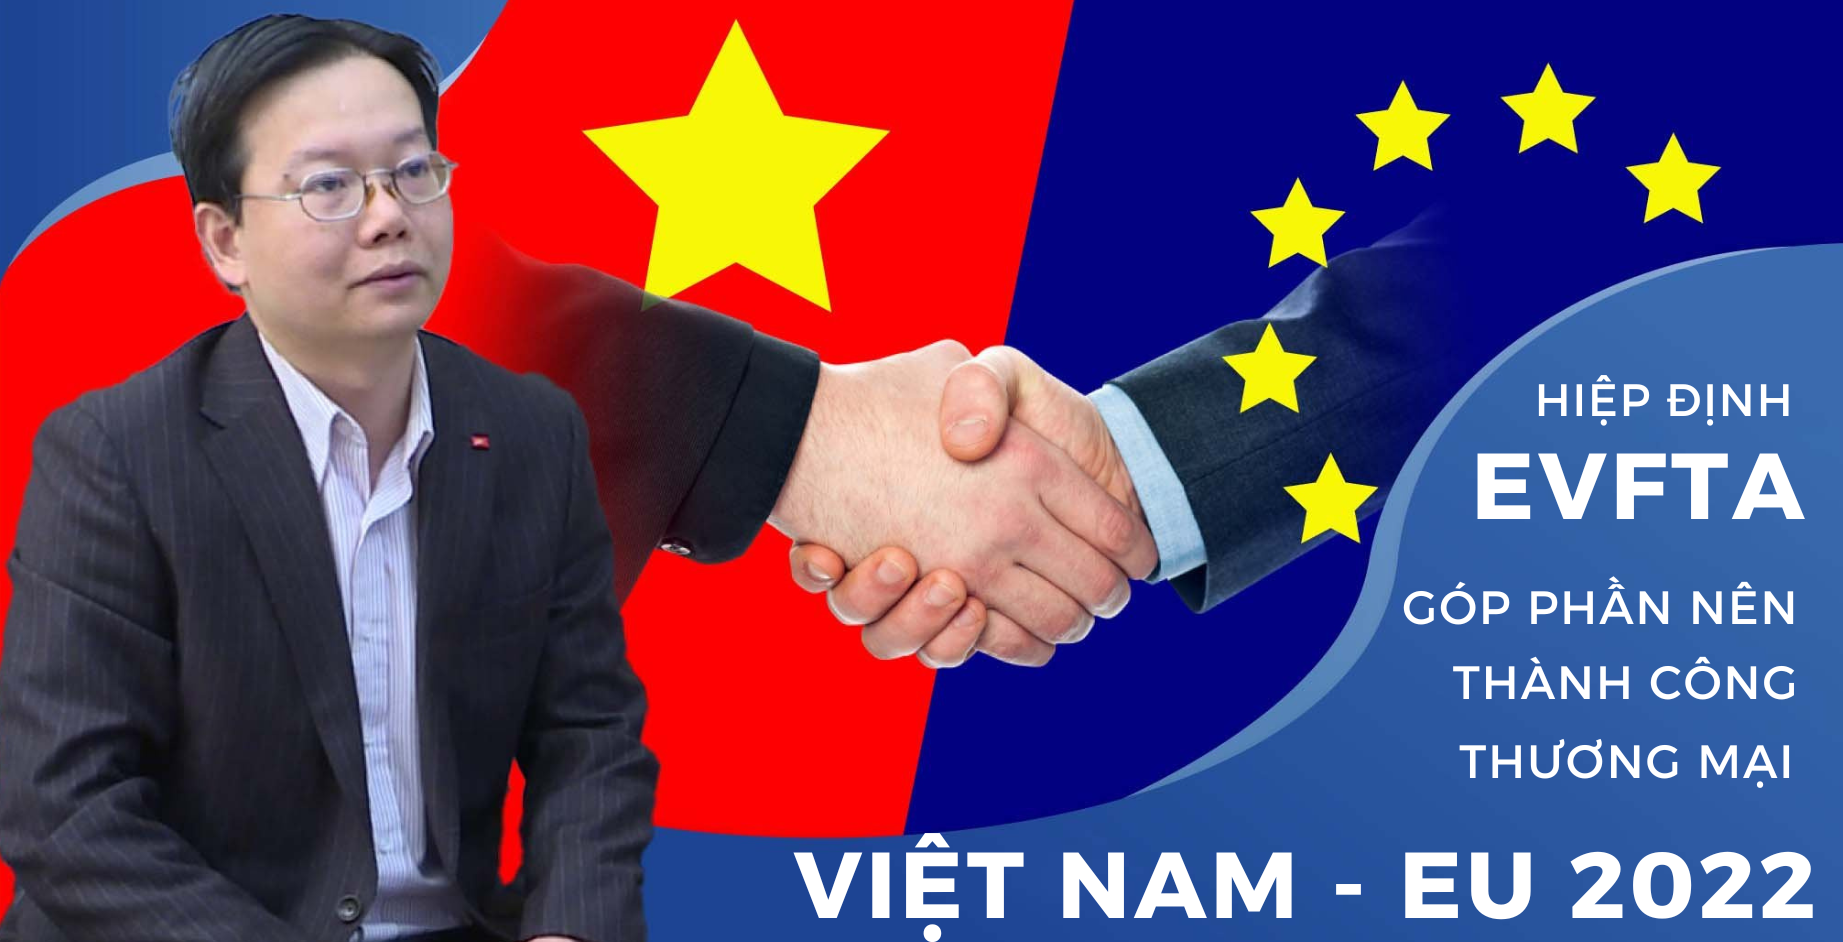 Hiệp định EVFTA góp phần tạo nên thành công thương mại Việt Nam - EU 2022